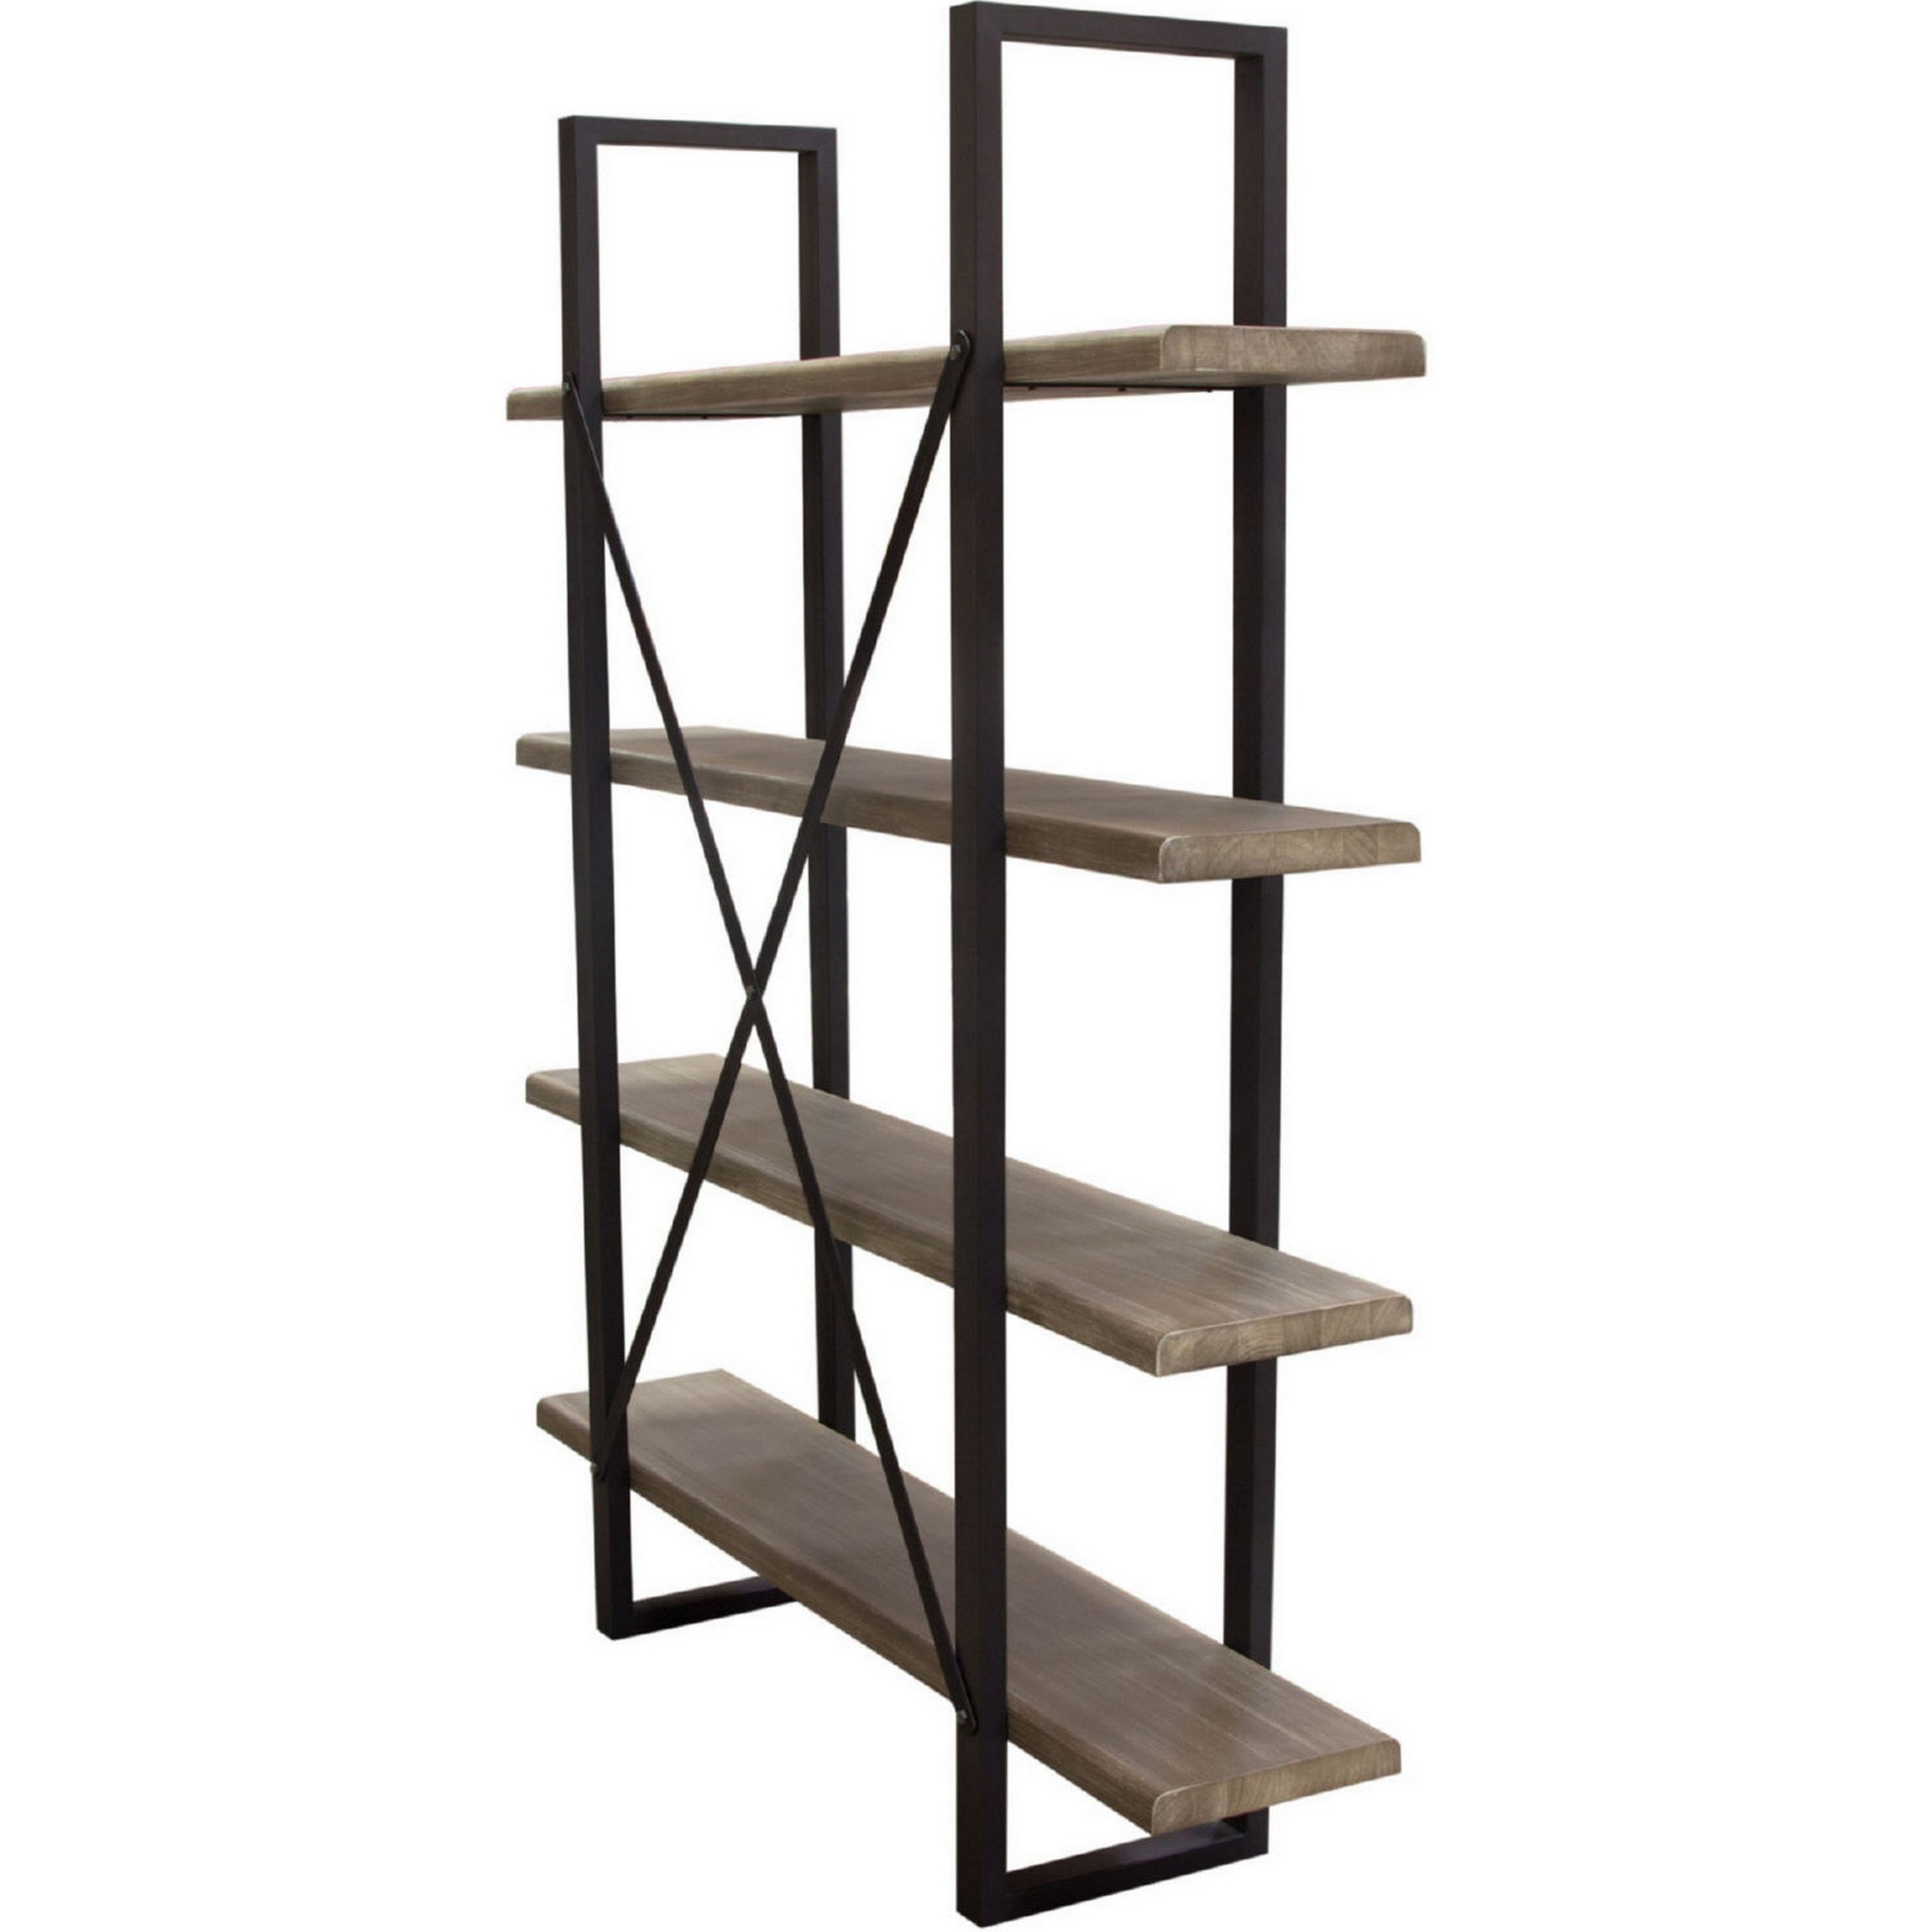 73 Inch Modern Standing Shelf, Industrial Style, 4 Tier, Rustic Oak Brown- Saltoro Sherpi